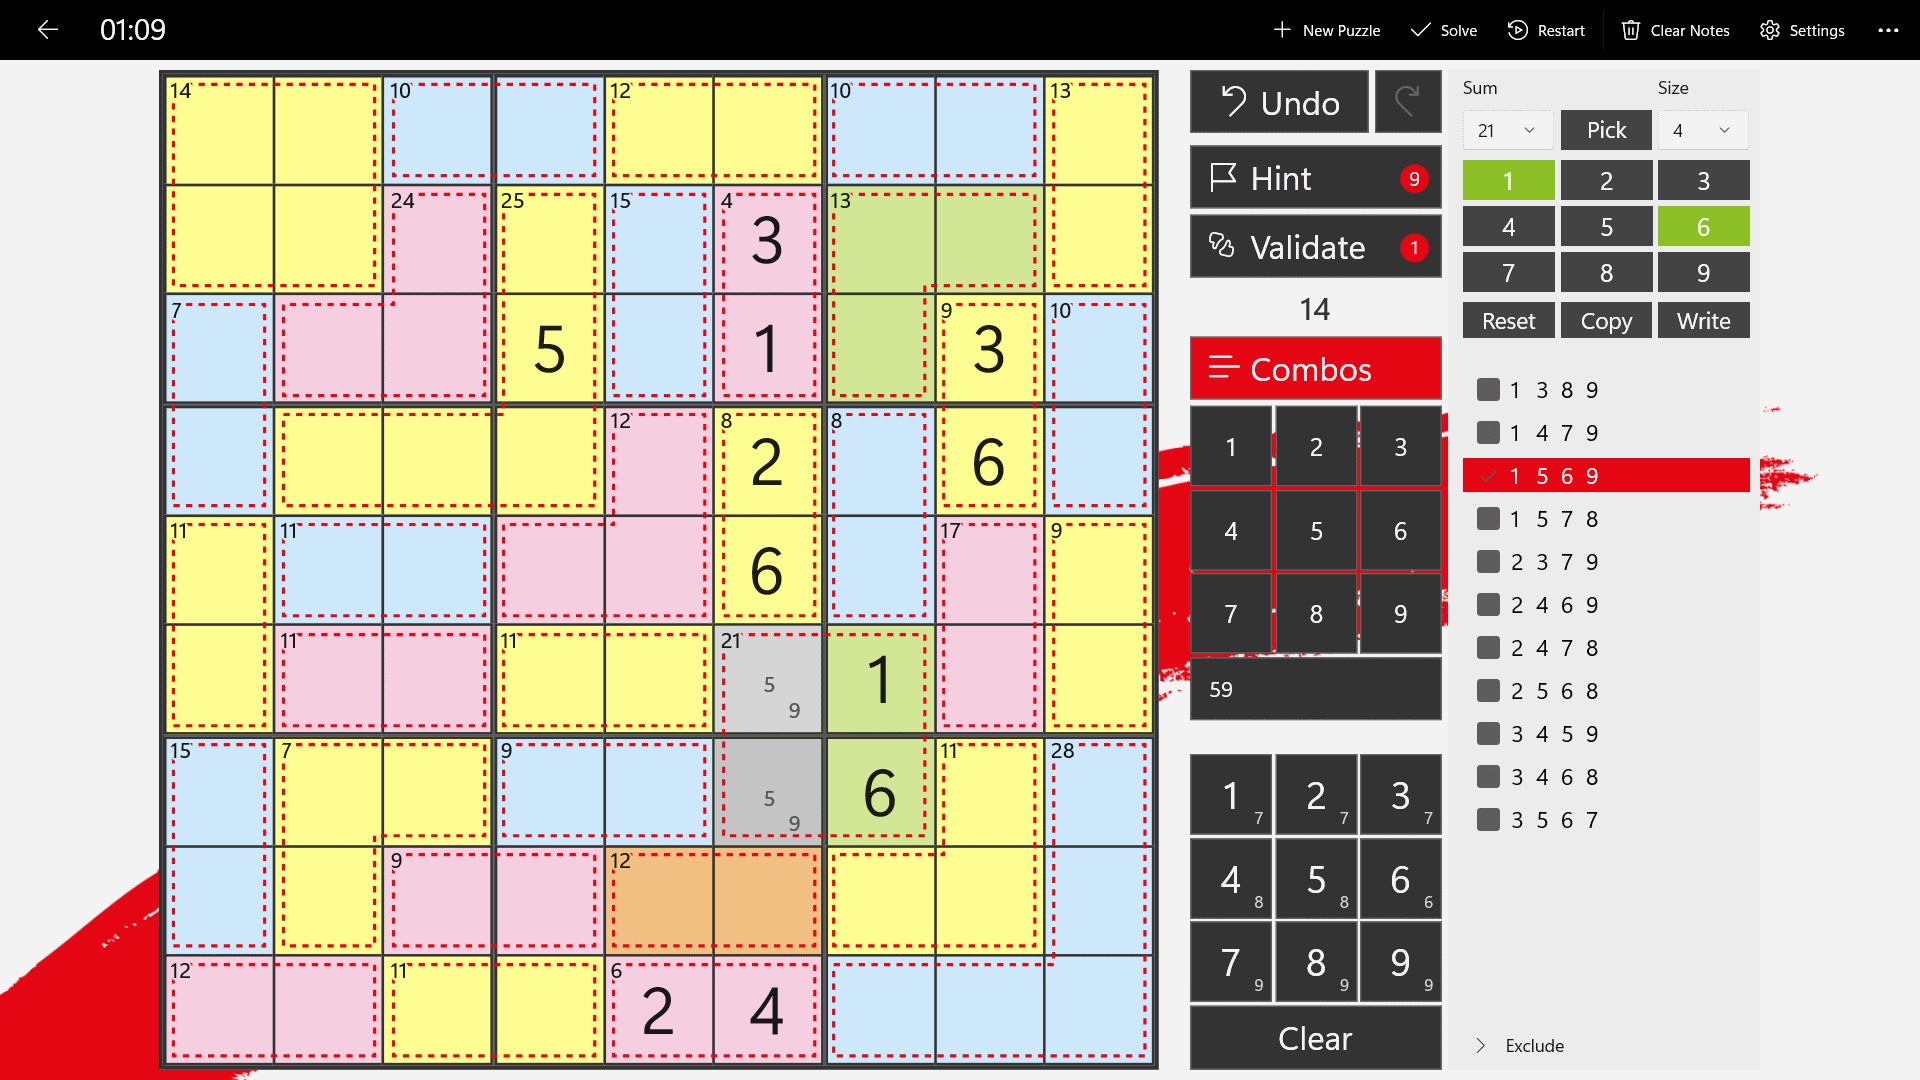 Jogo para Computador - Killer Sudoku - Disciplina - Matemática